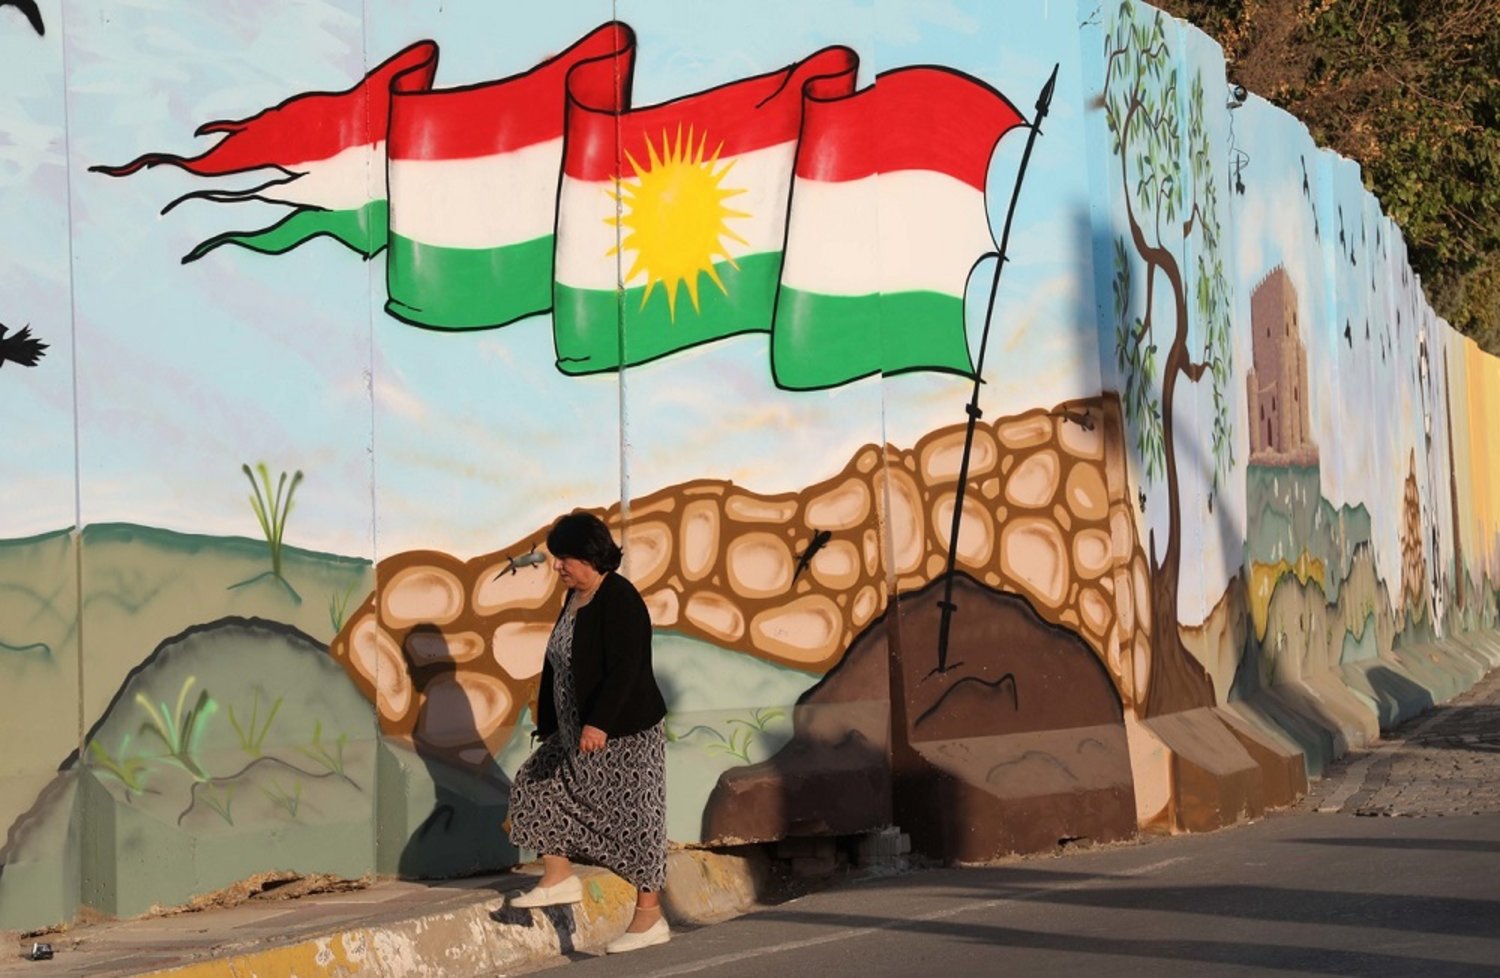 امرأة تسير بالقرب من جدار رسم عليه علم كوردستان